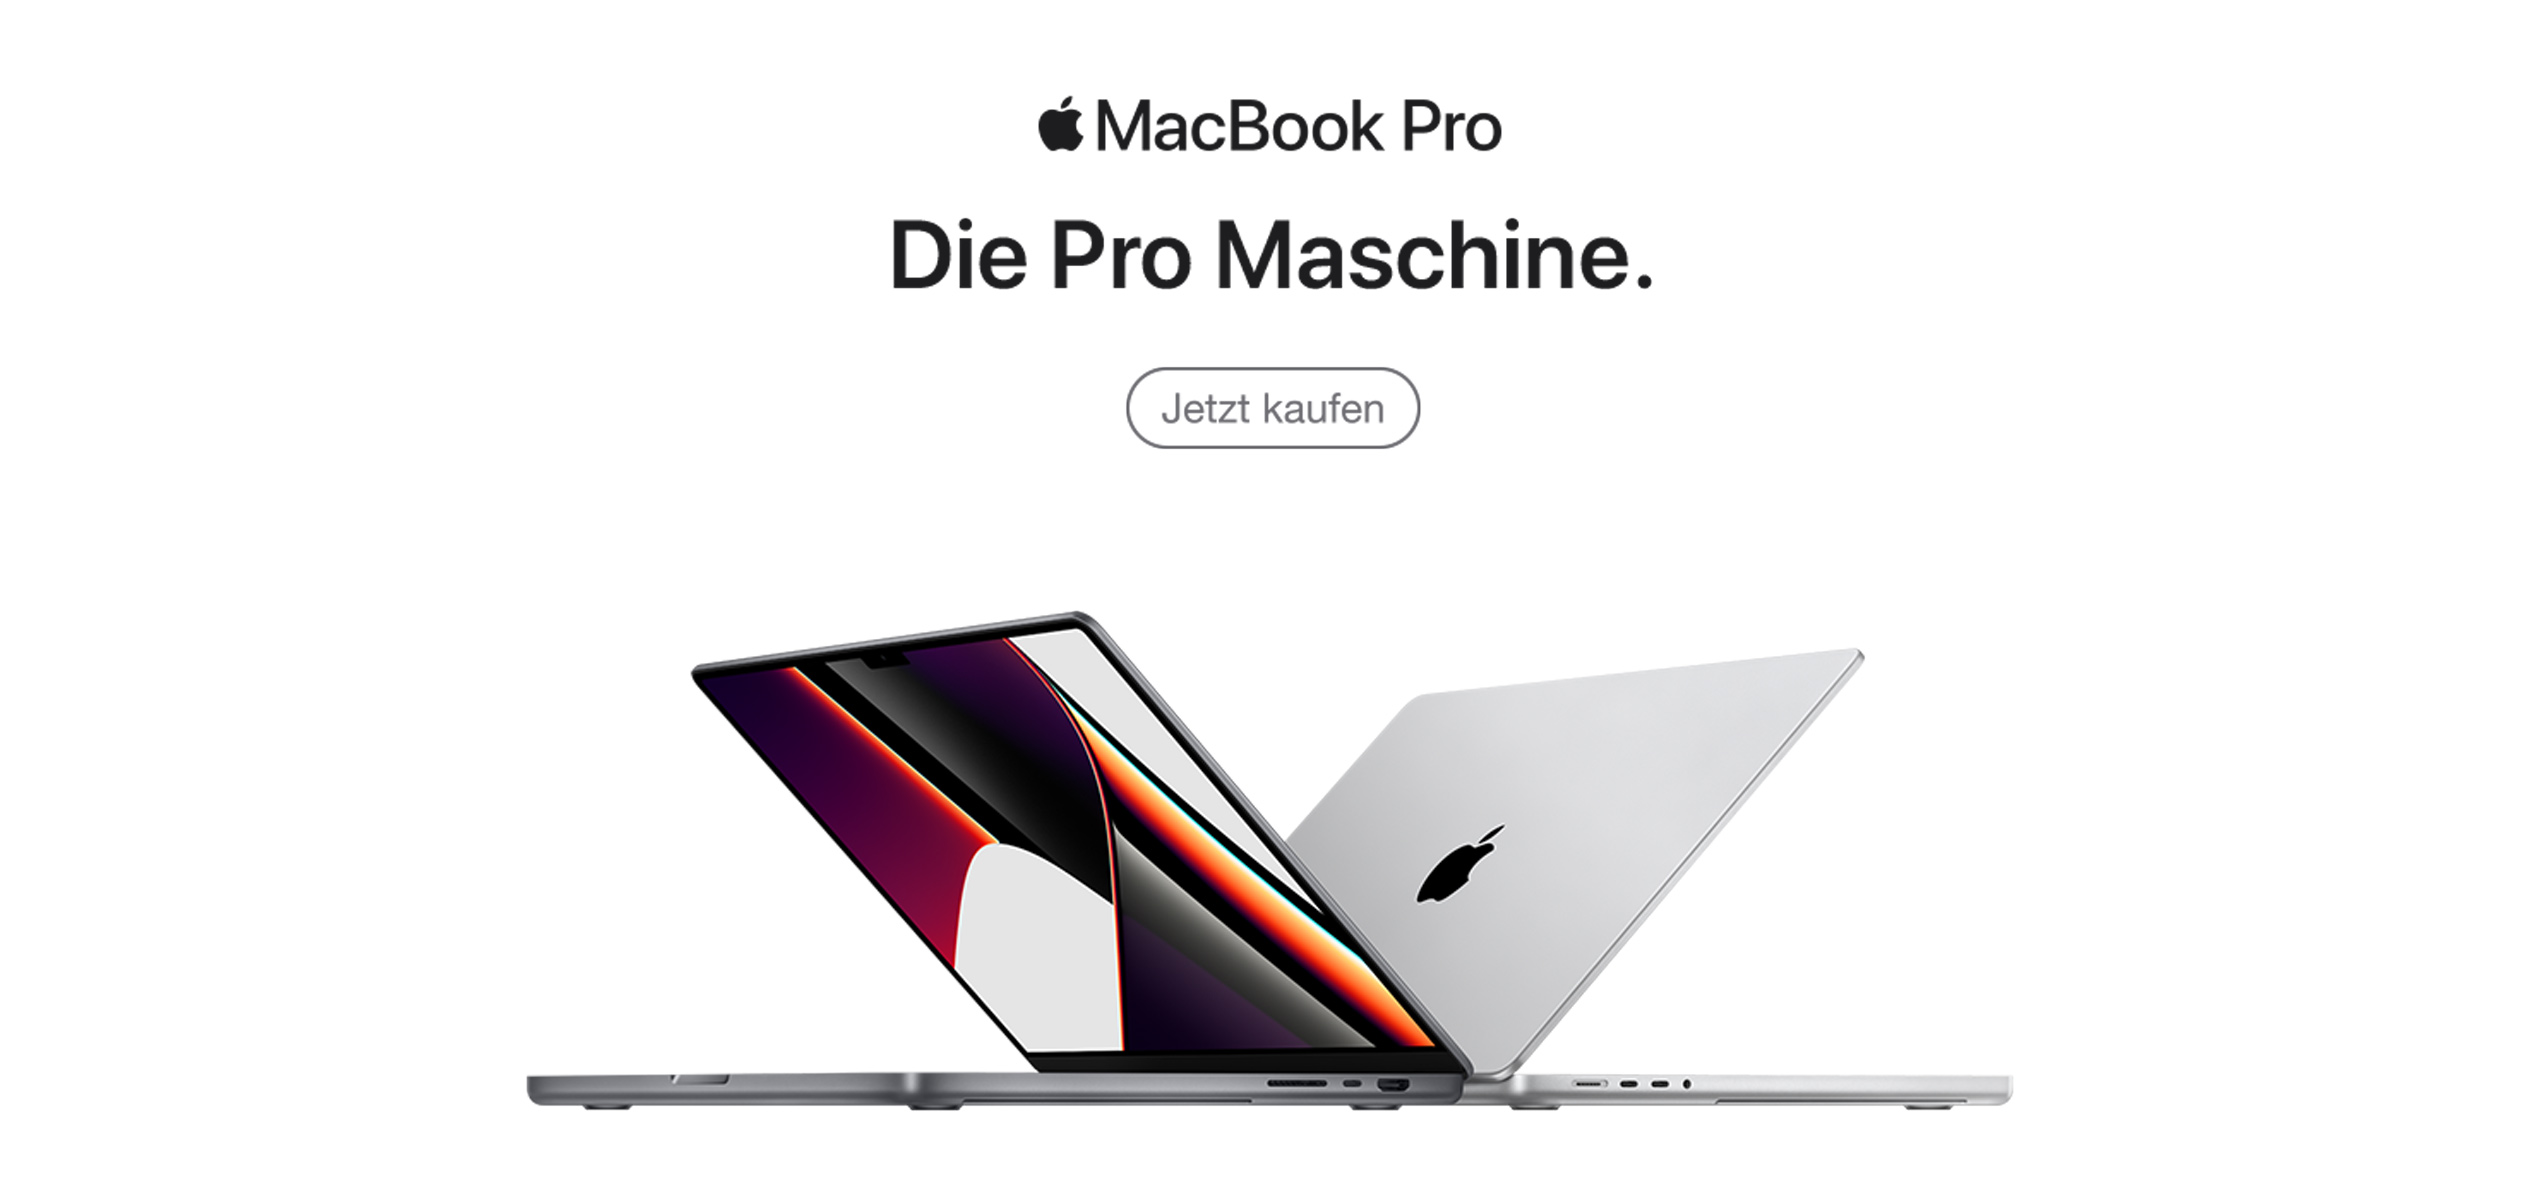 MacBook Pro die Pro Maschine